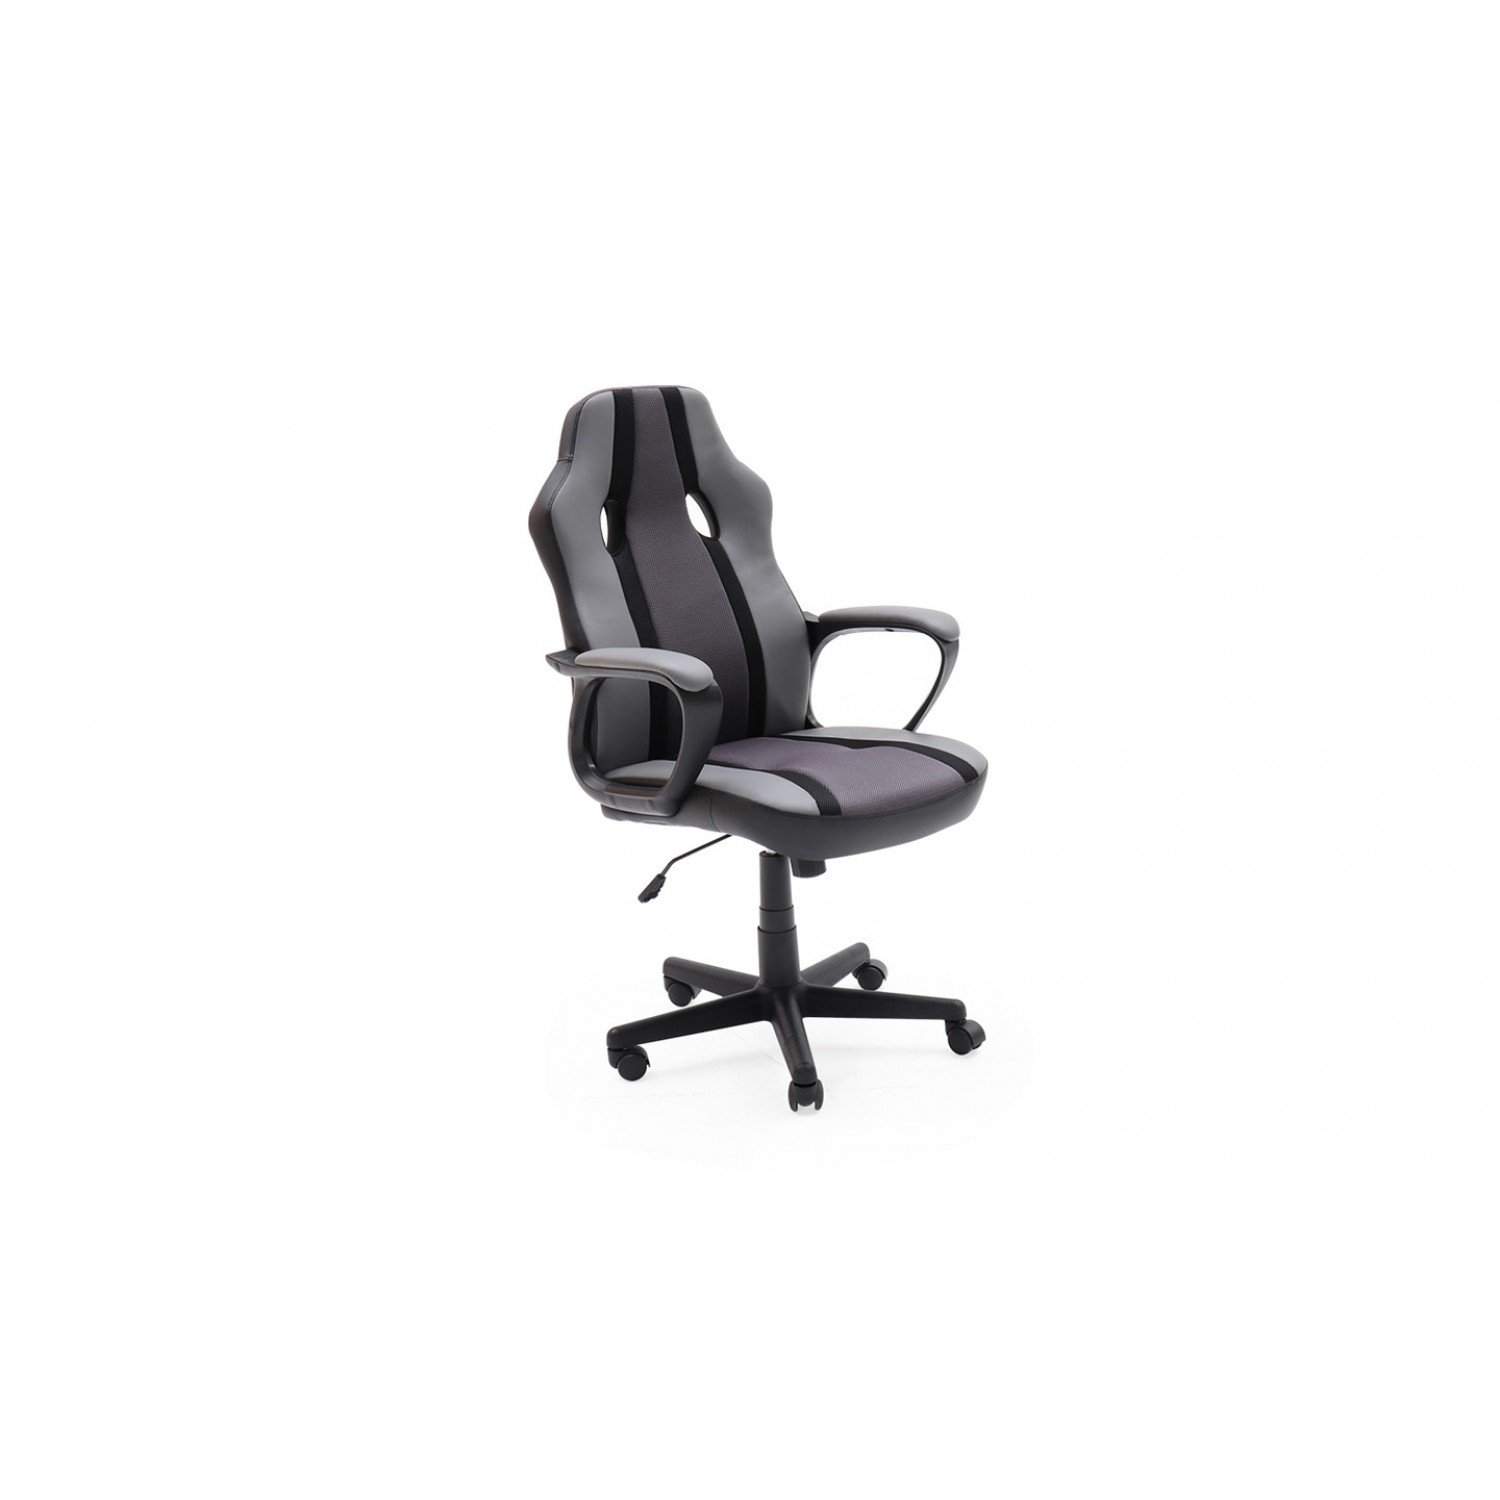 Vida Living Furniture Ledger Black Office Chair